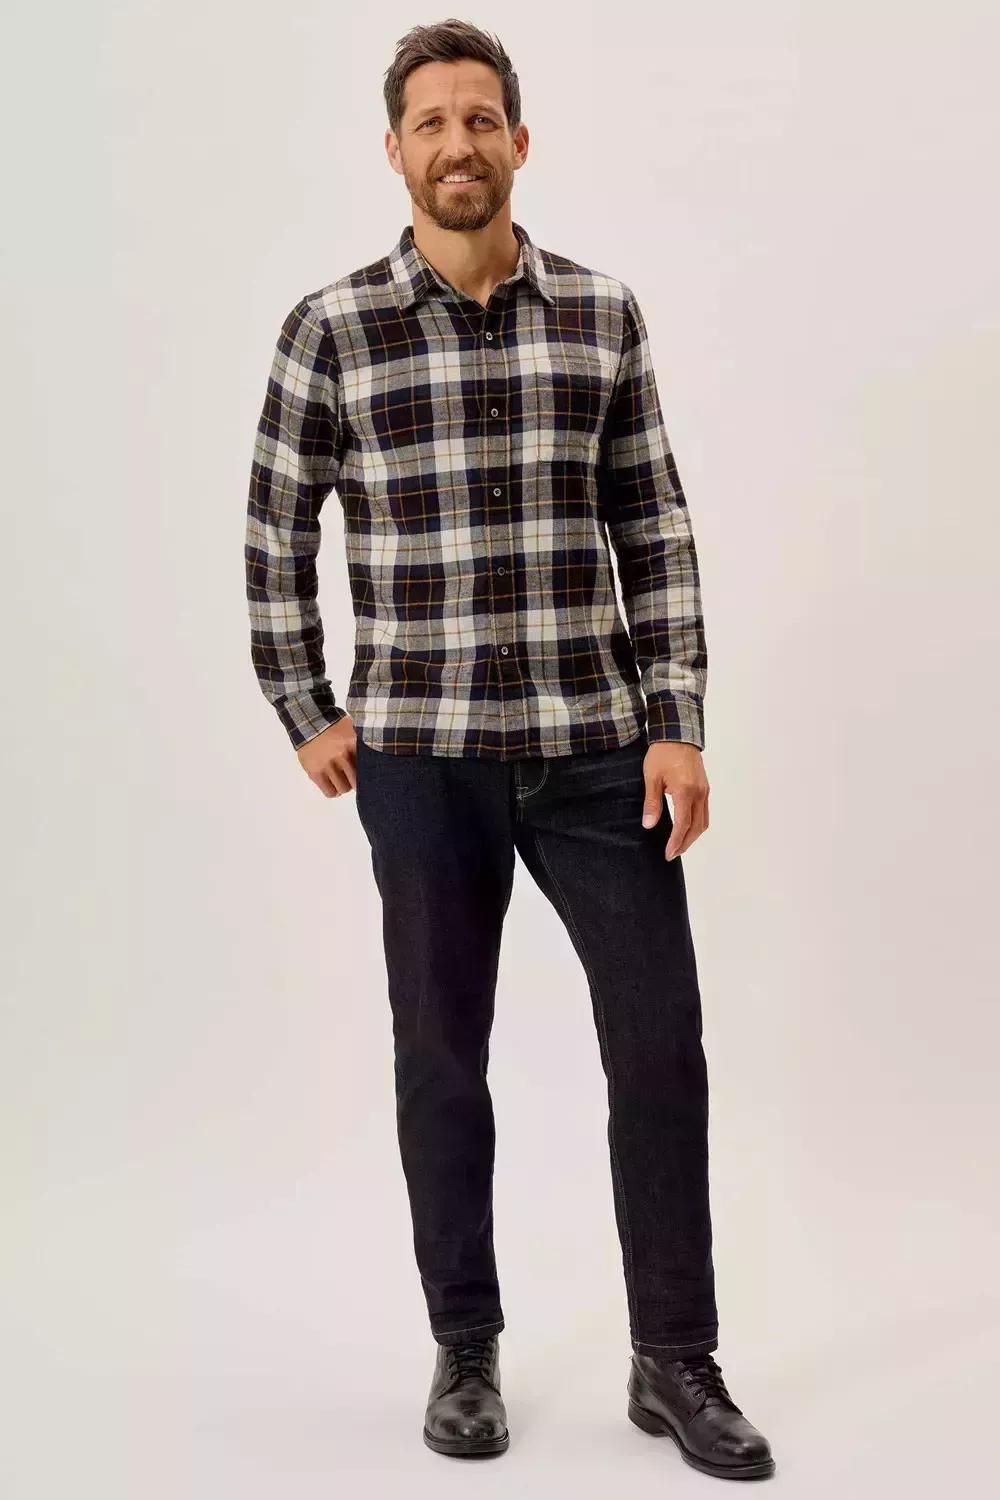 Cómo llevar una camisa de franela: Trajes modernos y con estilo para hombres